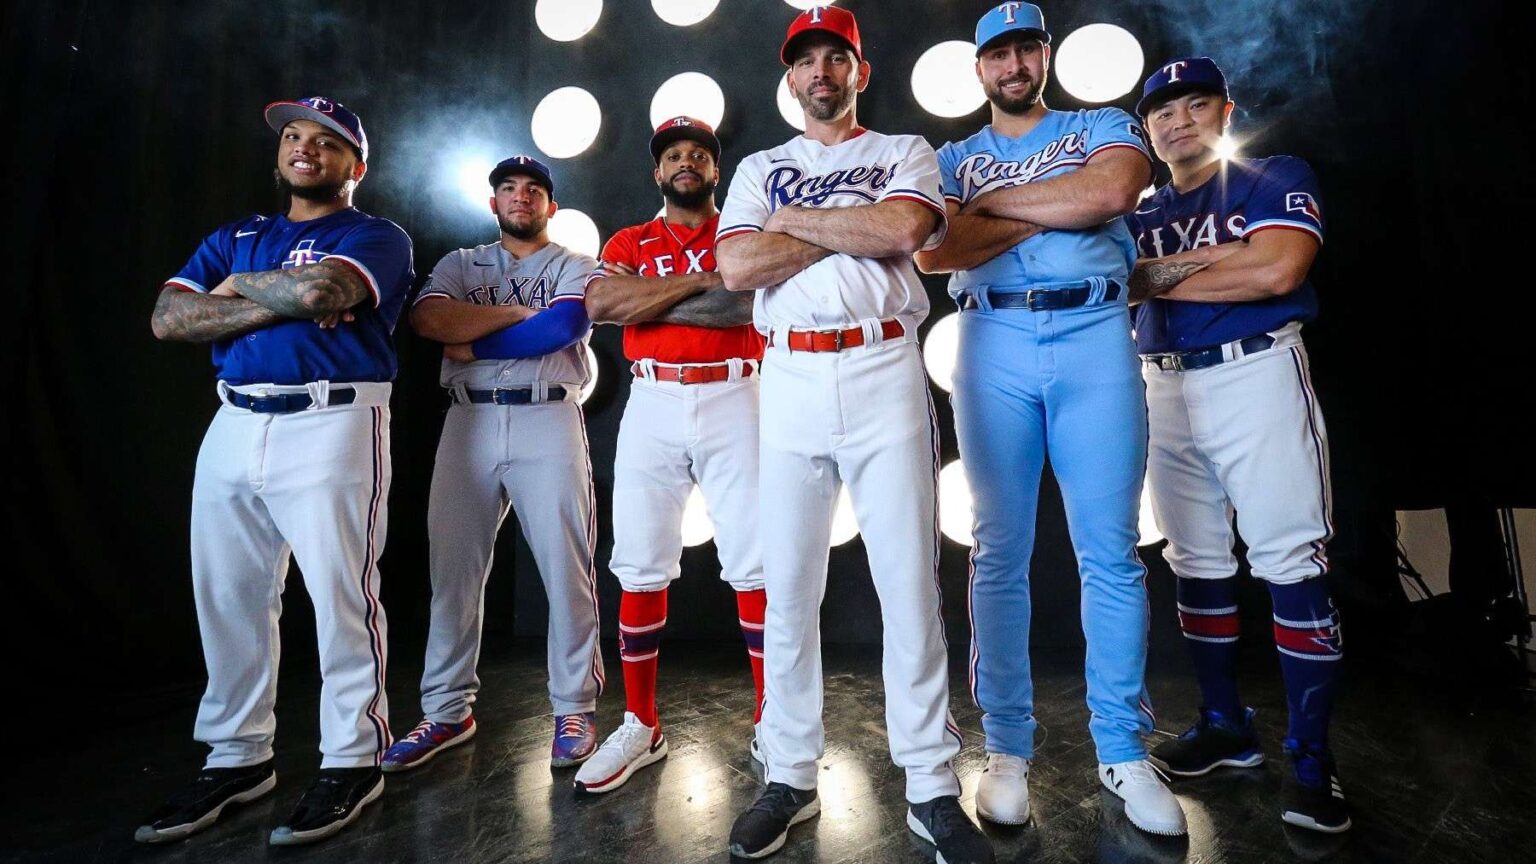 best baseball uniforms ever